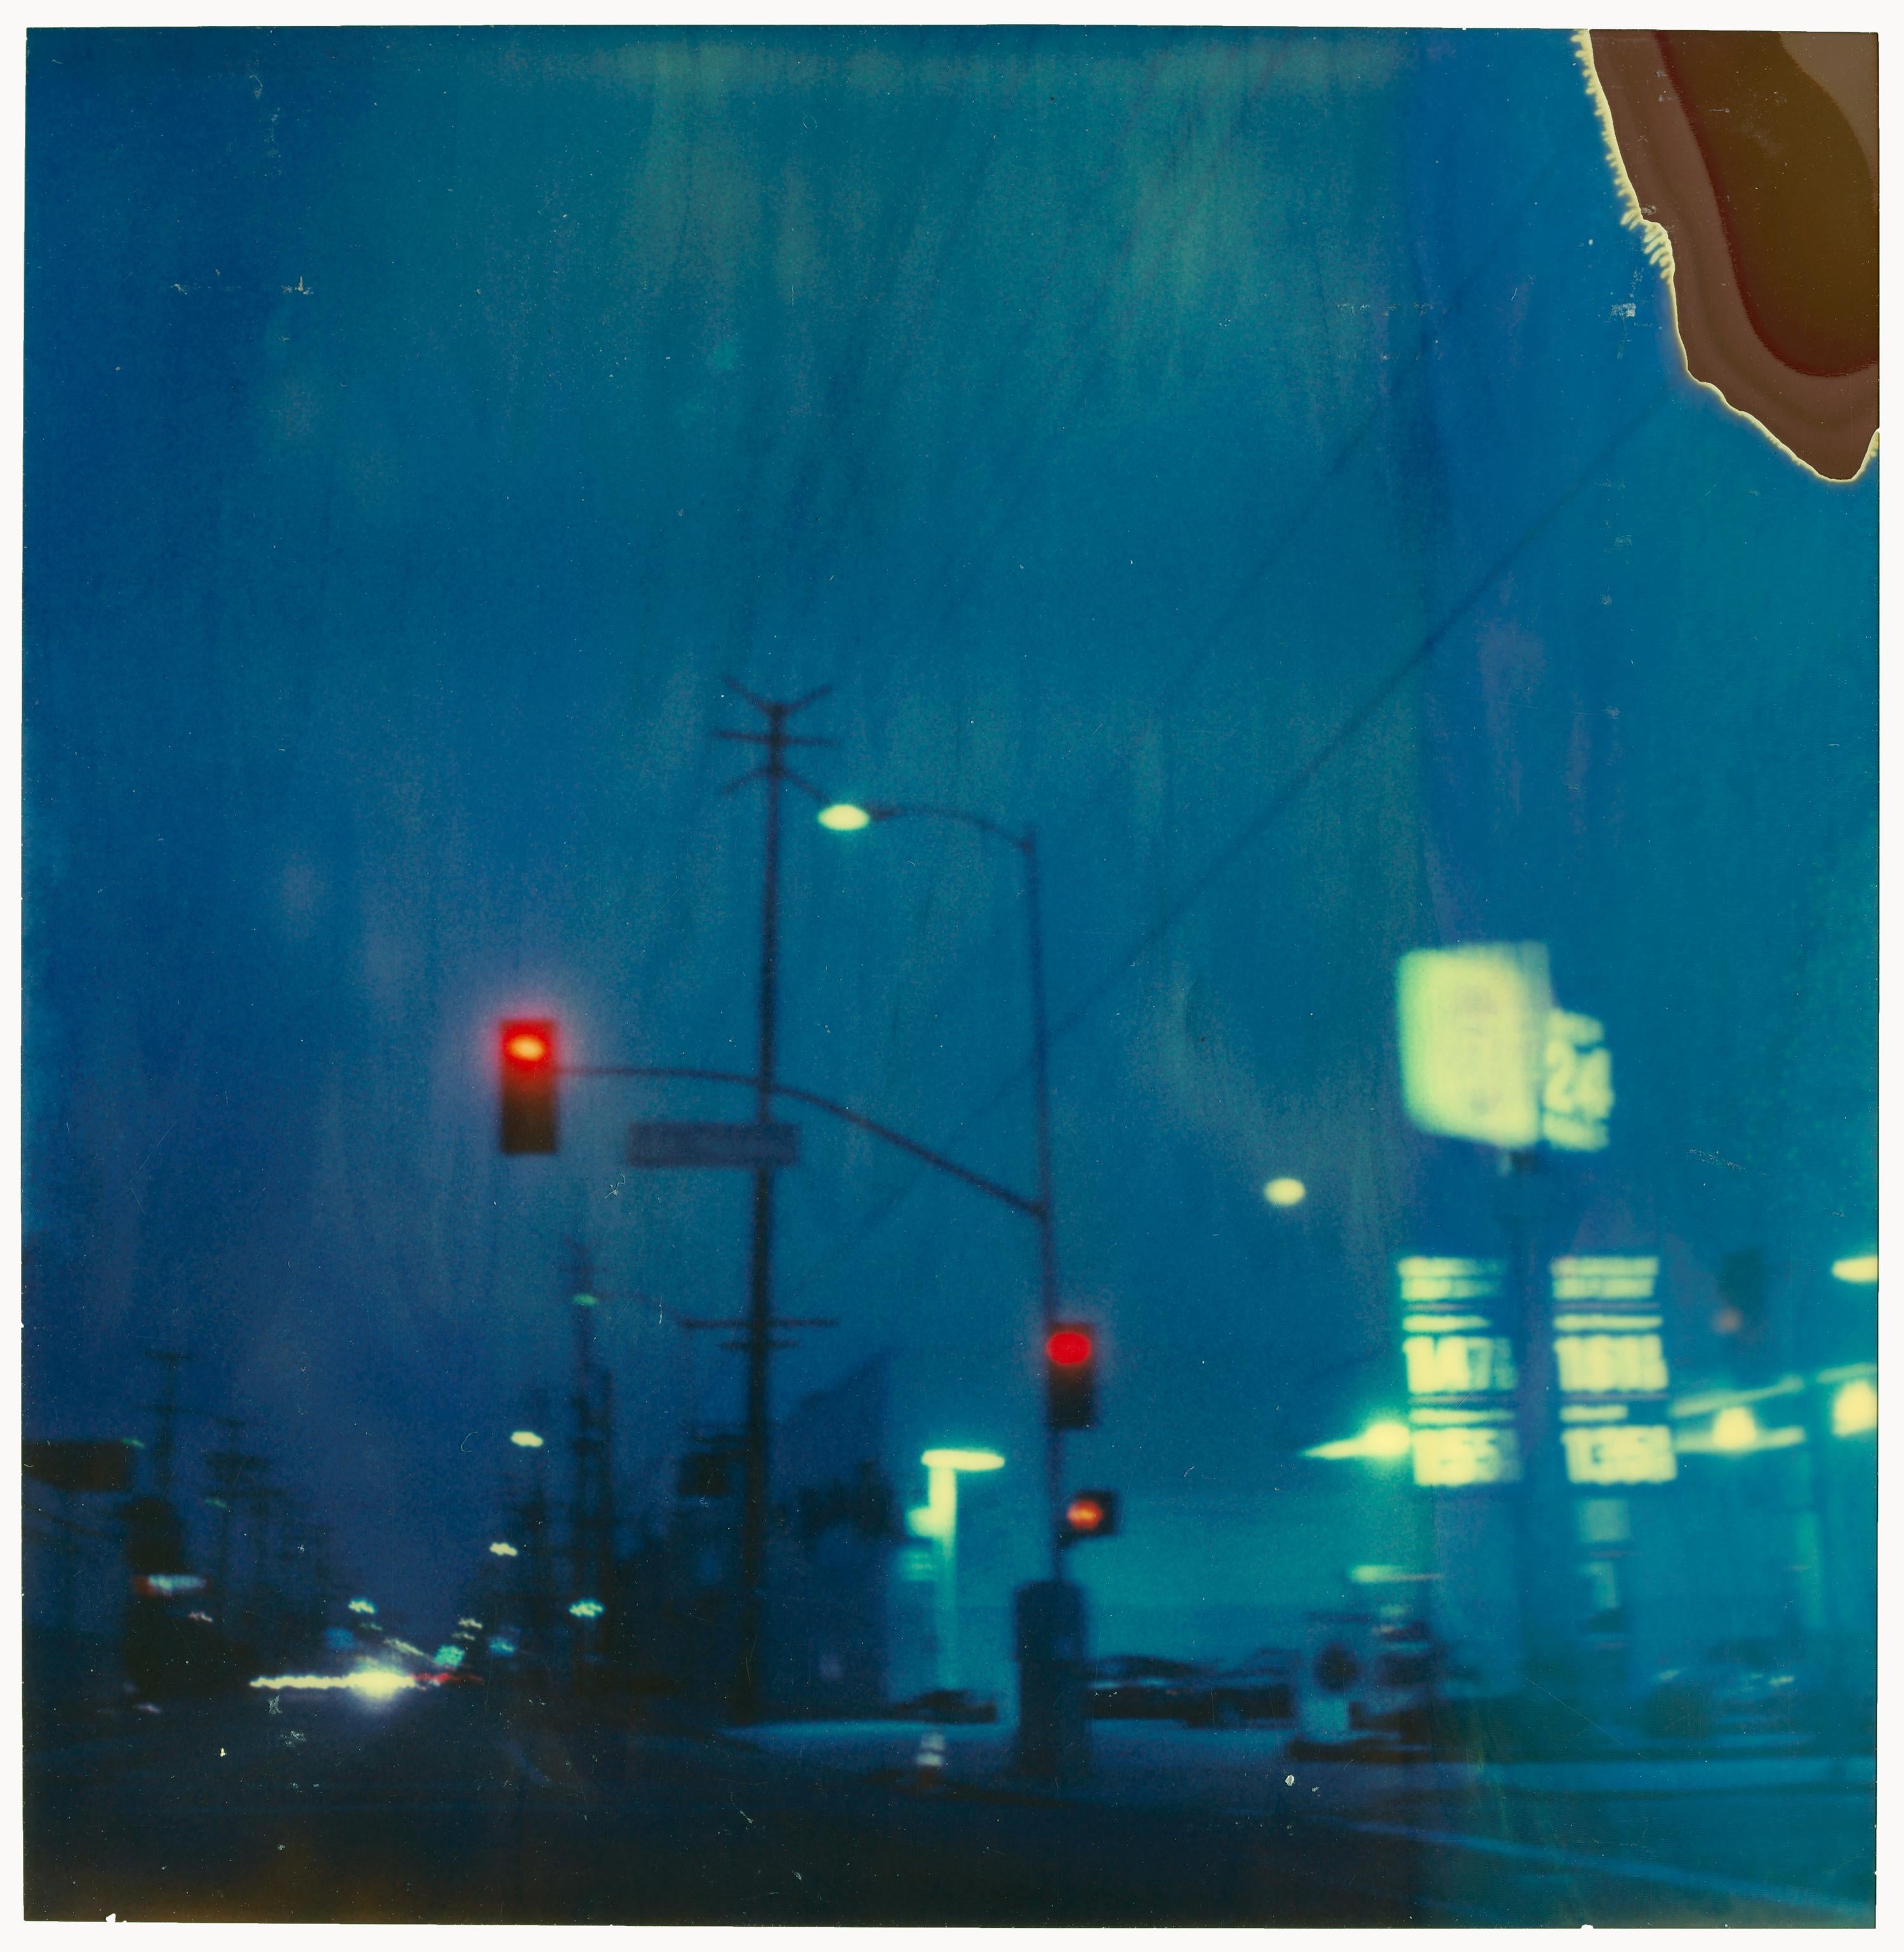 Landscape Photograph Stefanie Schneider - Mindscreen 7 - Contemporain, 21e siècle, Polaroid, Los Angeles, Nuit